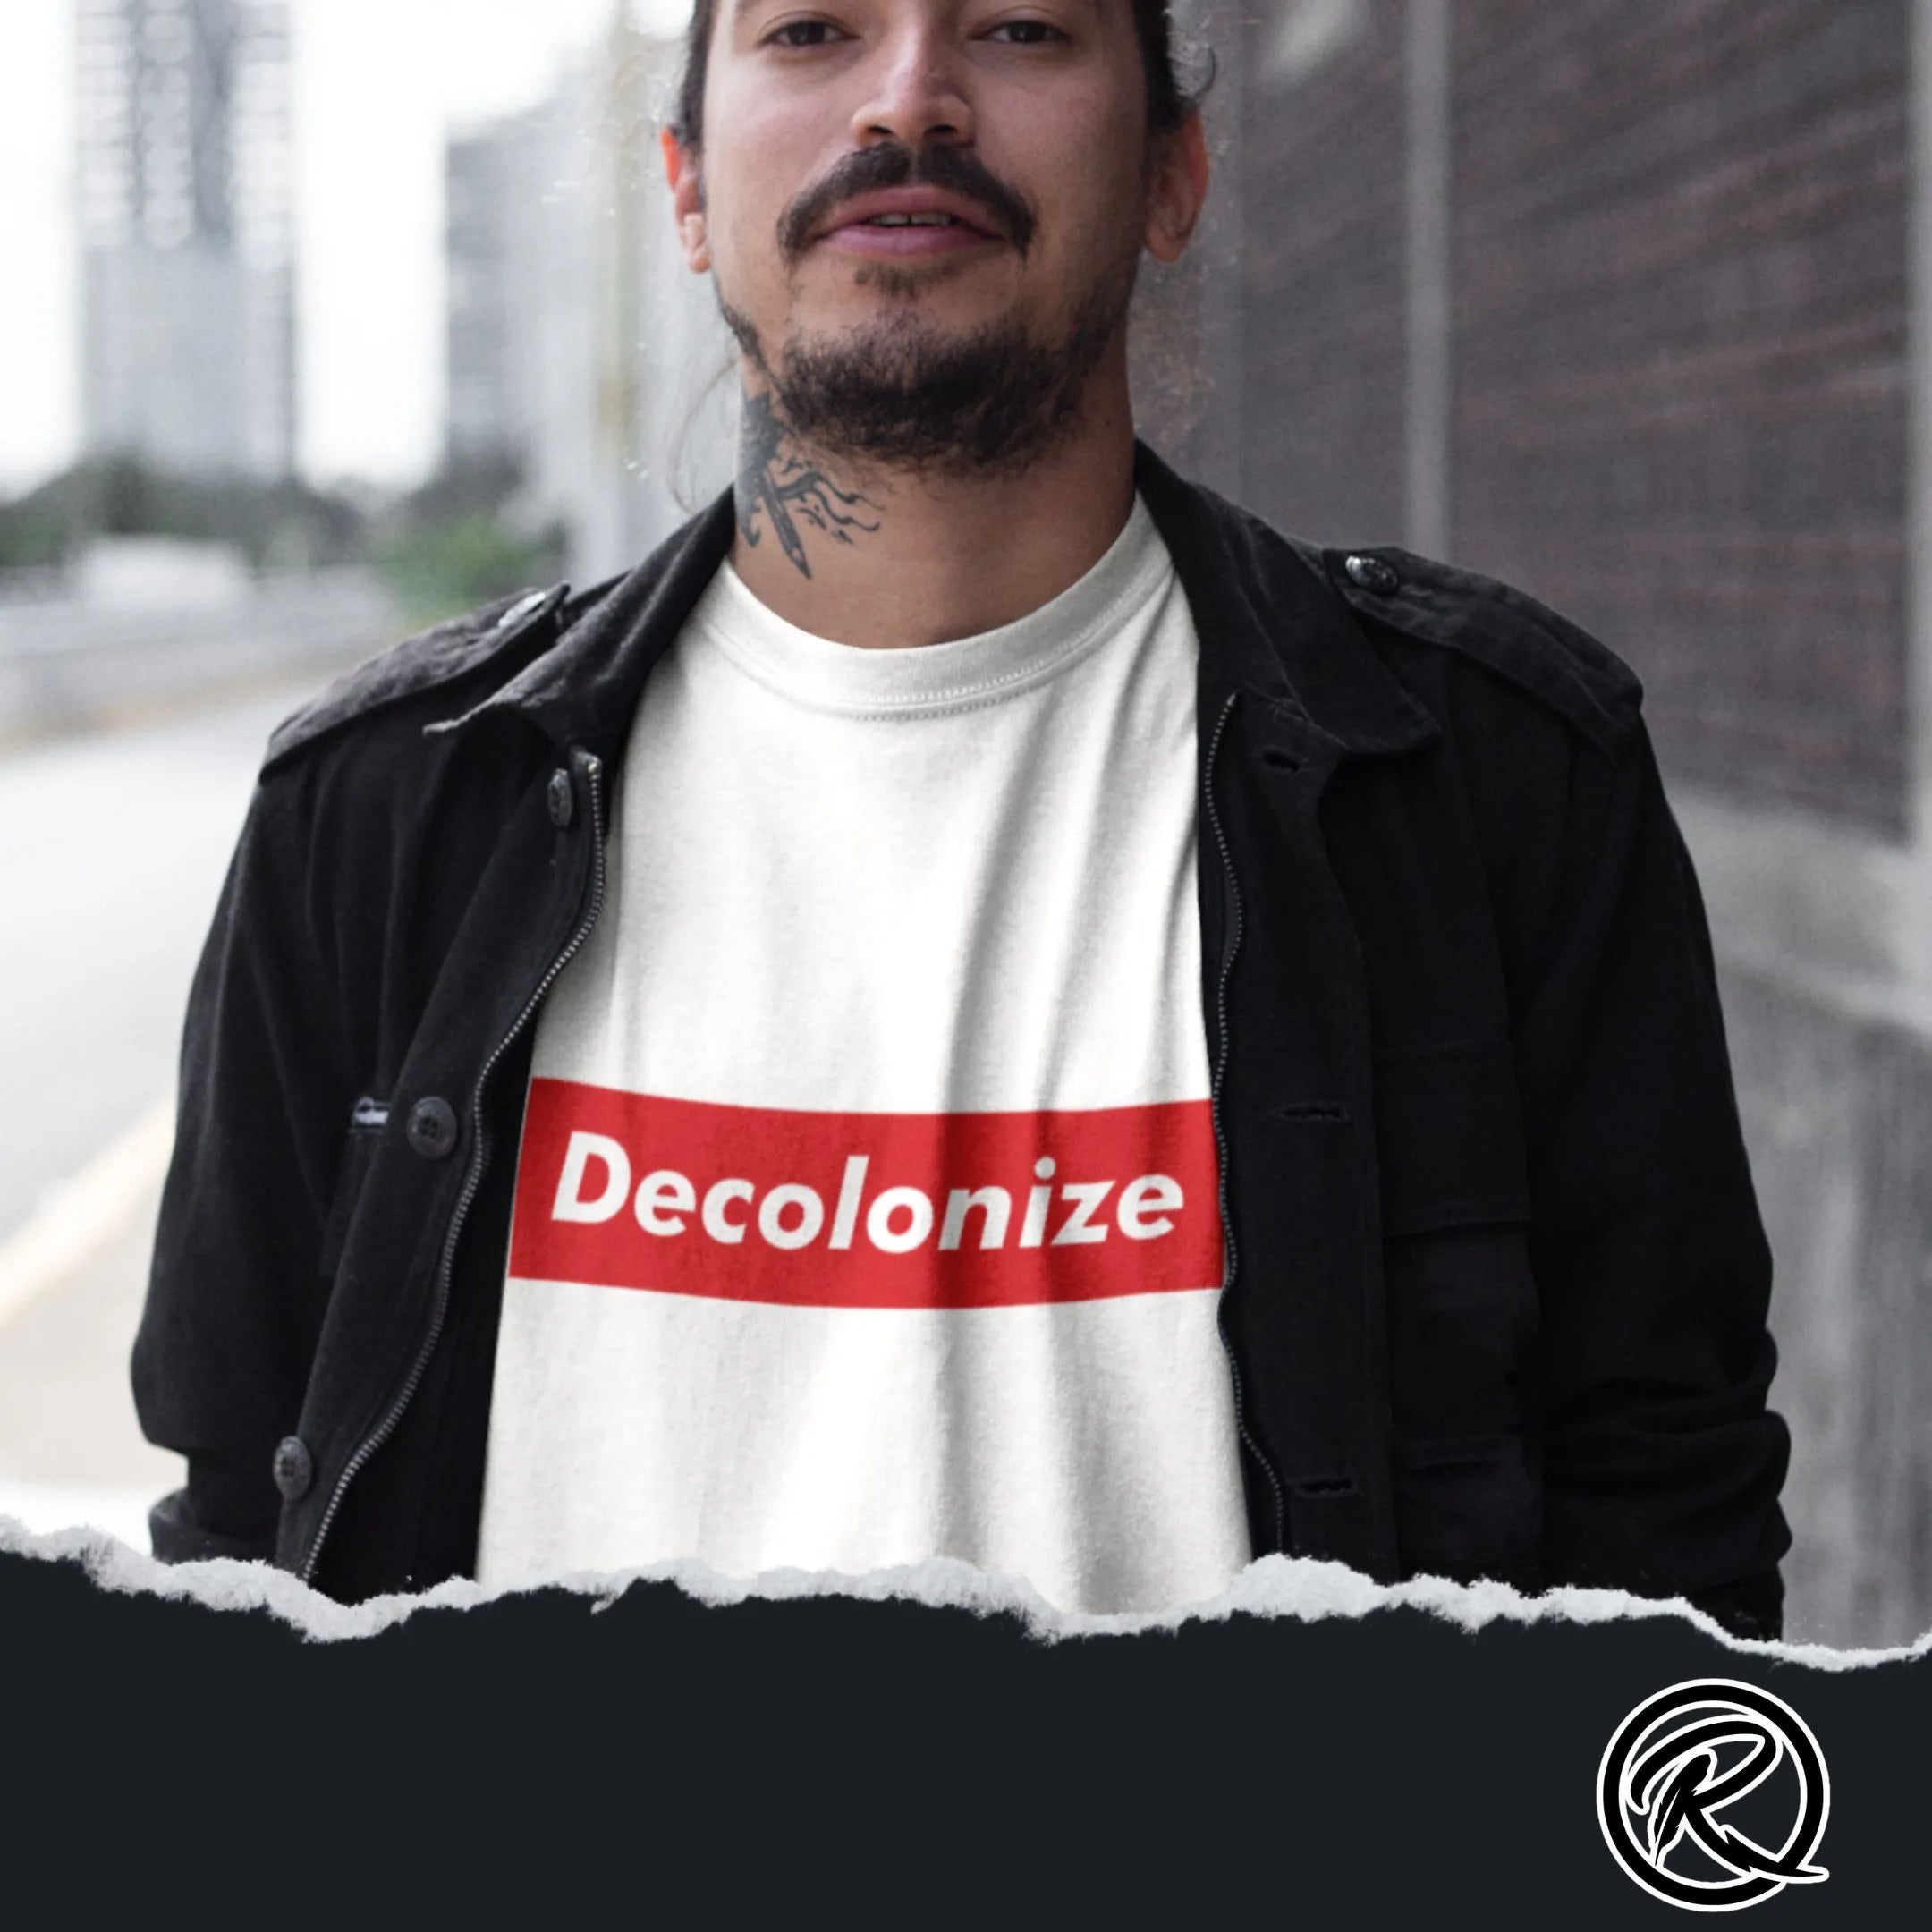 #decolonize